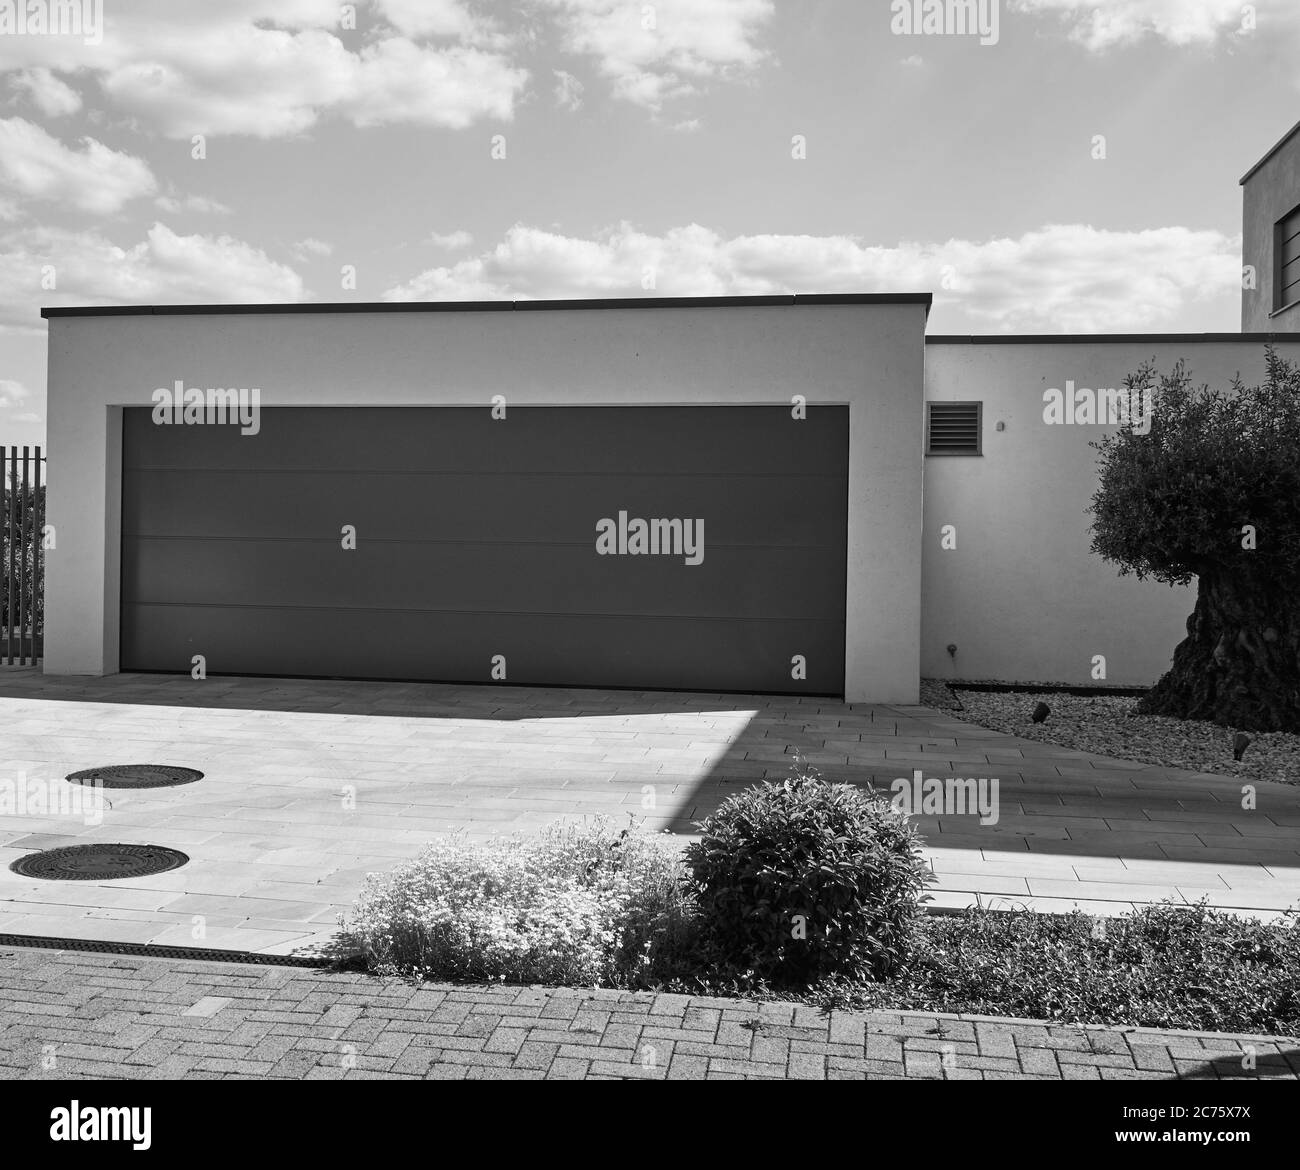 Steinhude, 29. Mai 2020: Doppelgarage mit großer Tür auf einem Neubau, minimalistisch schwarz-weiß Stockfoto